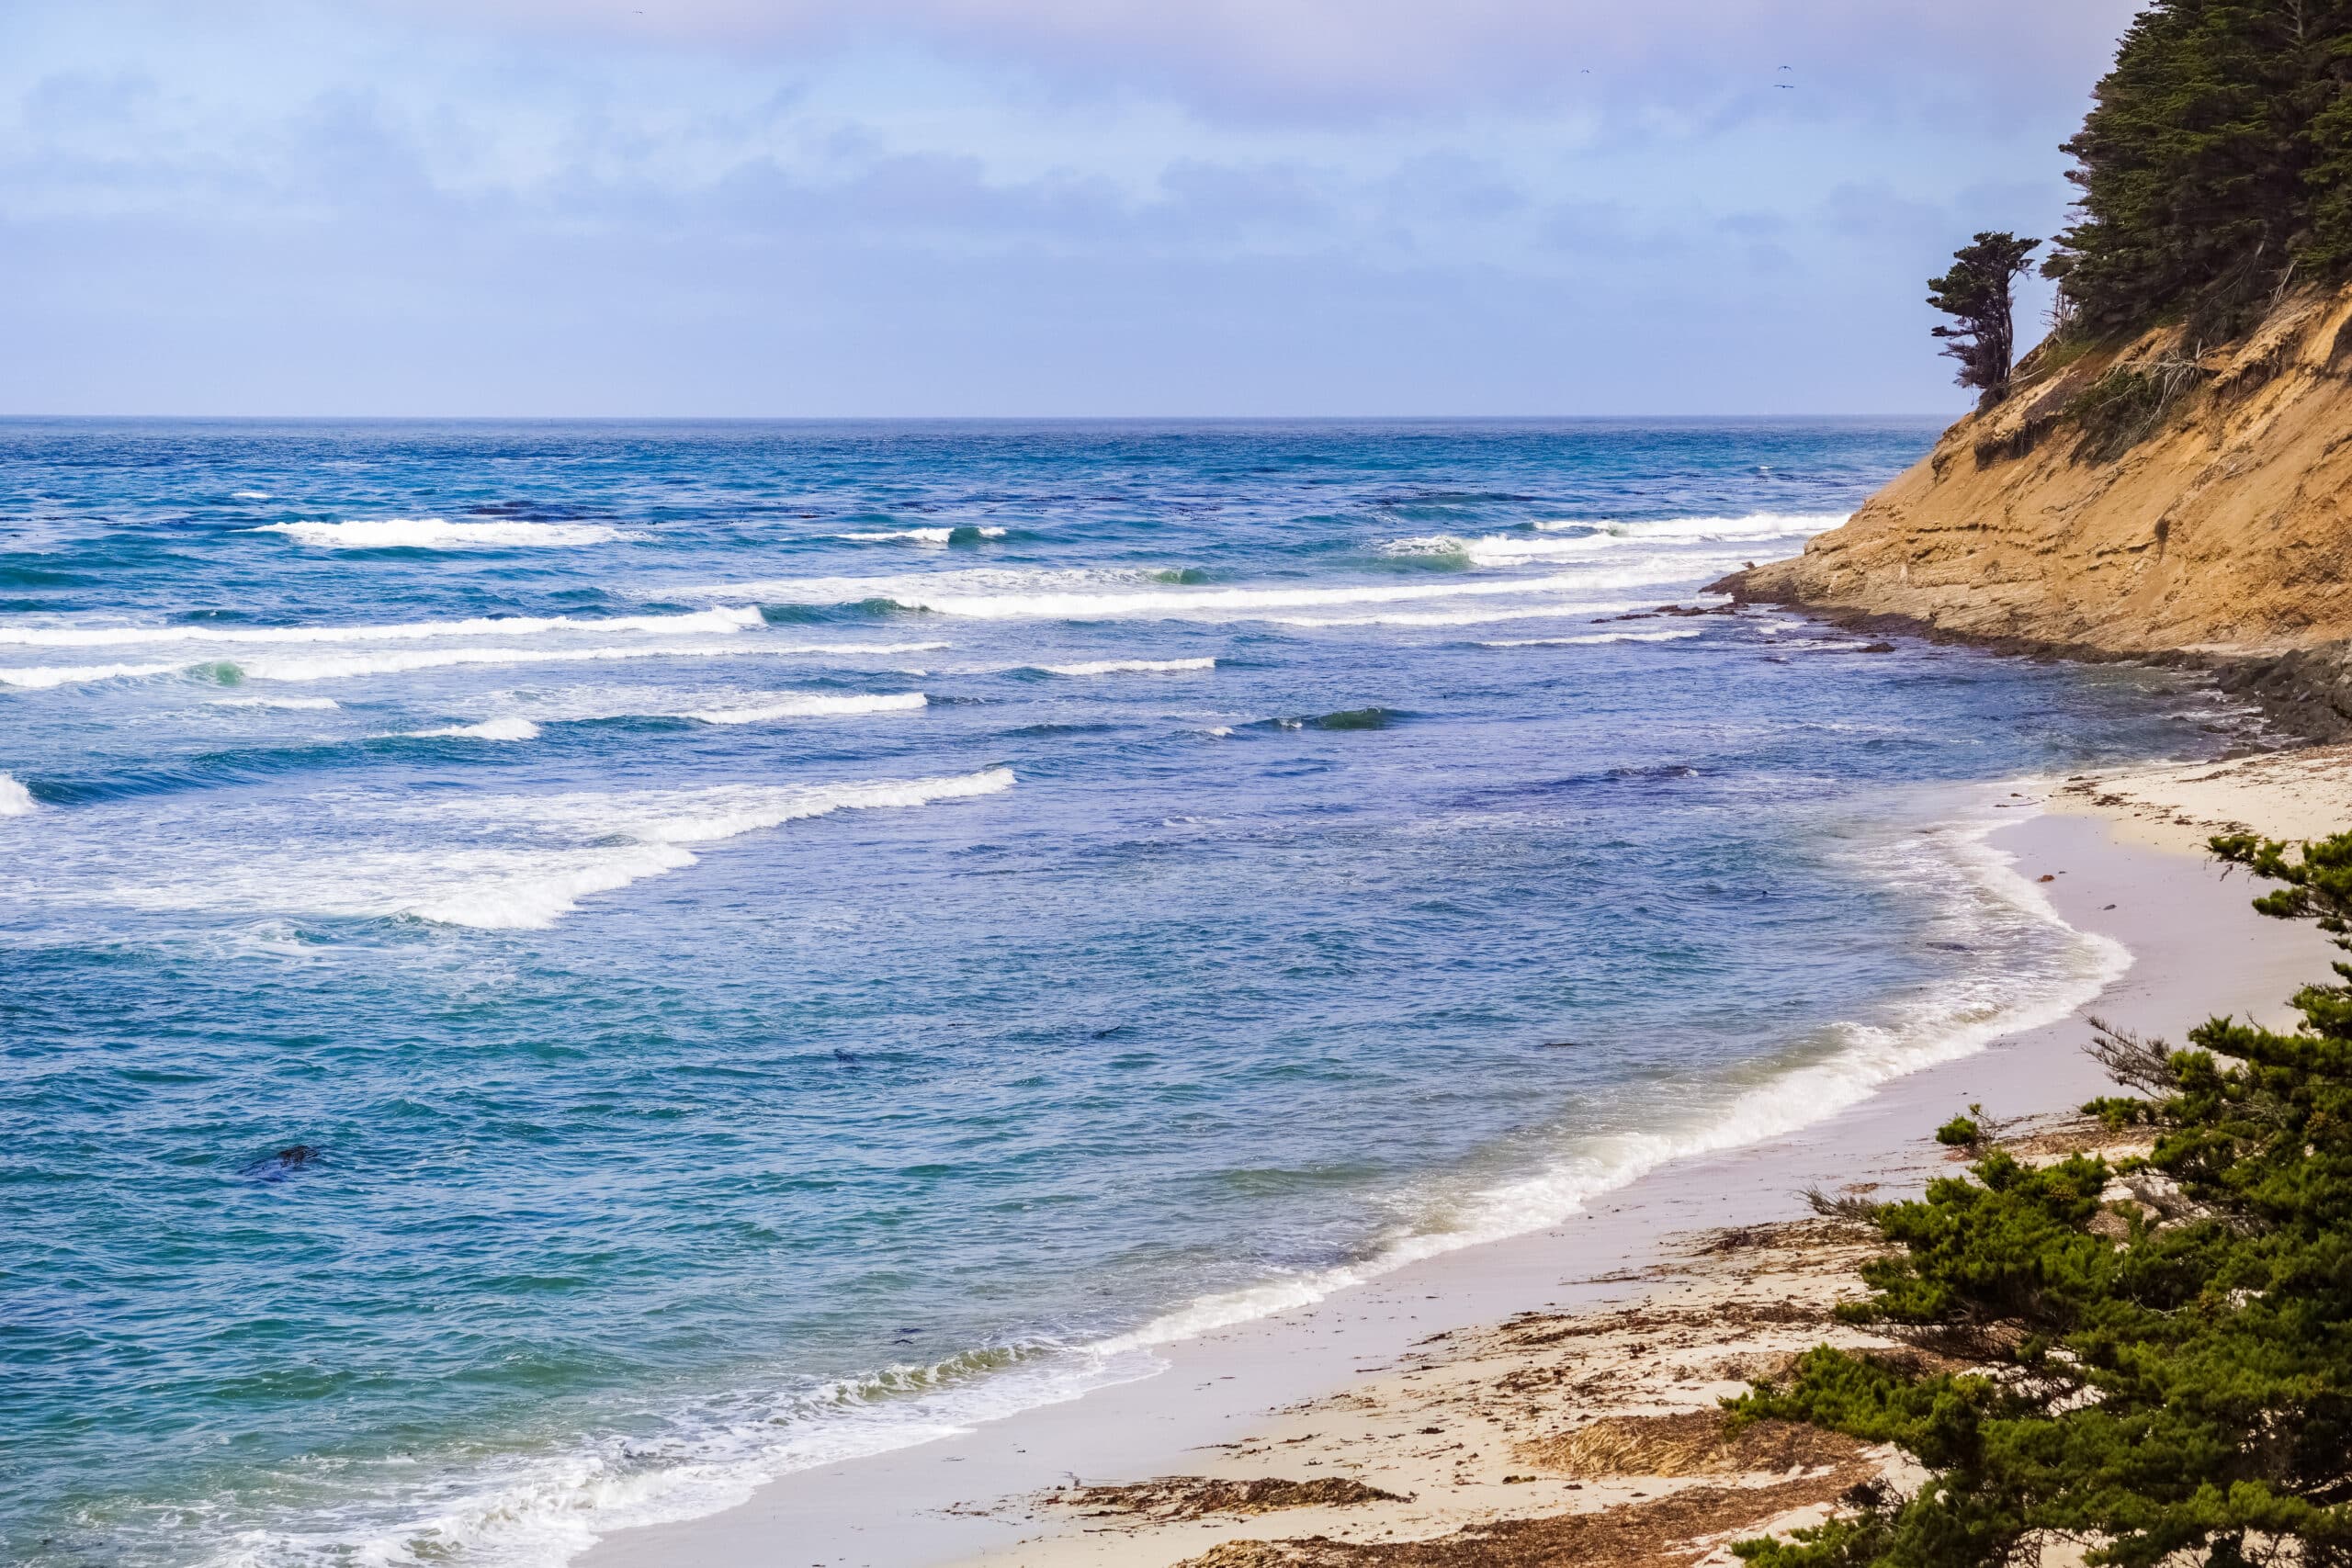 The scenic Pacific Ocean coastline, Moss Beach, California